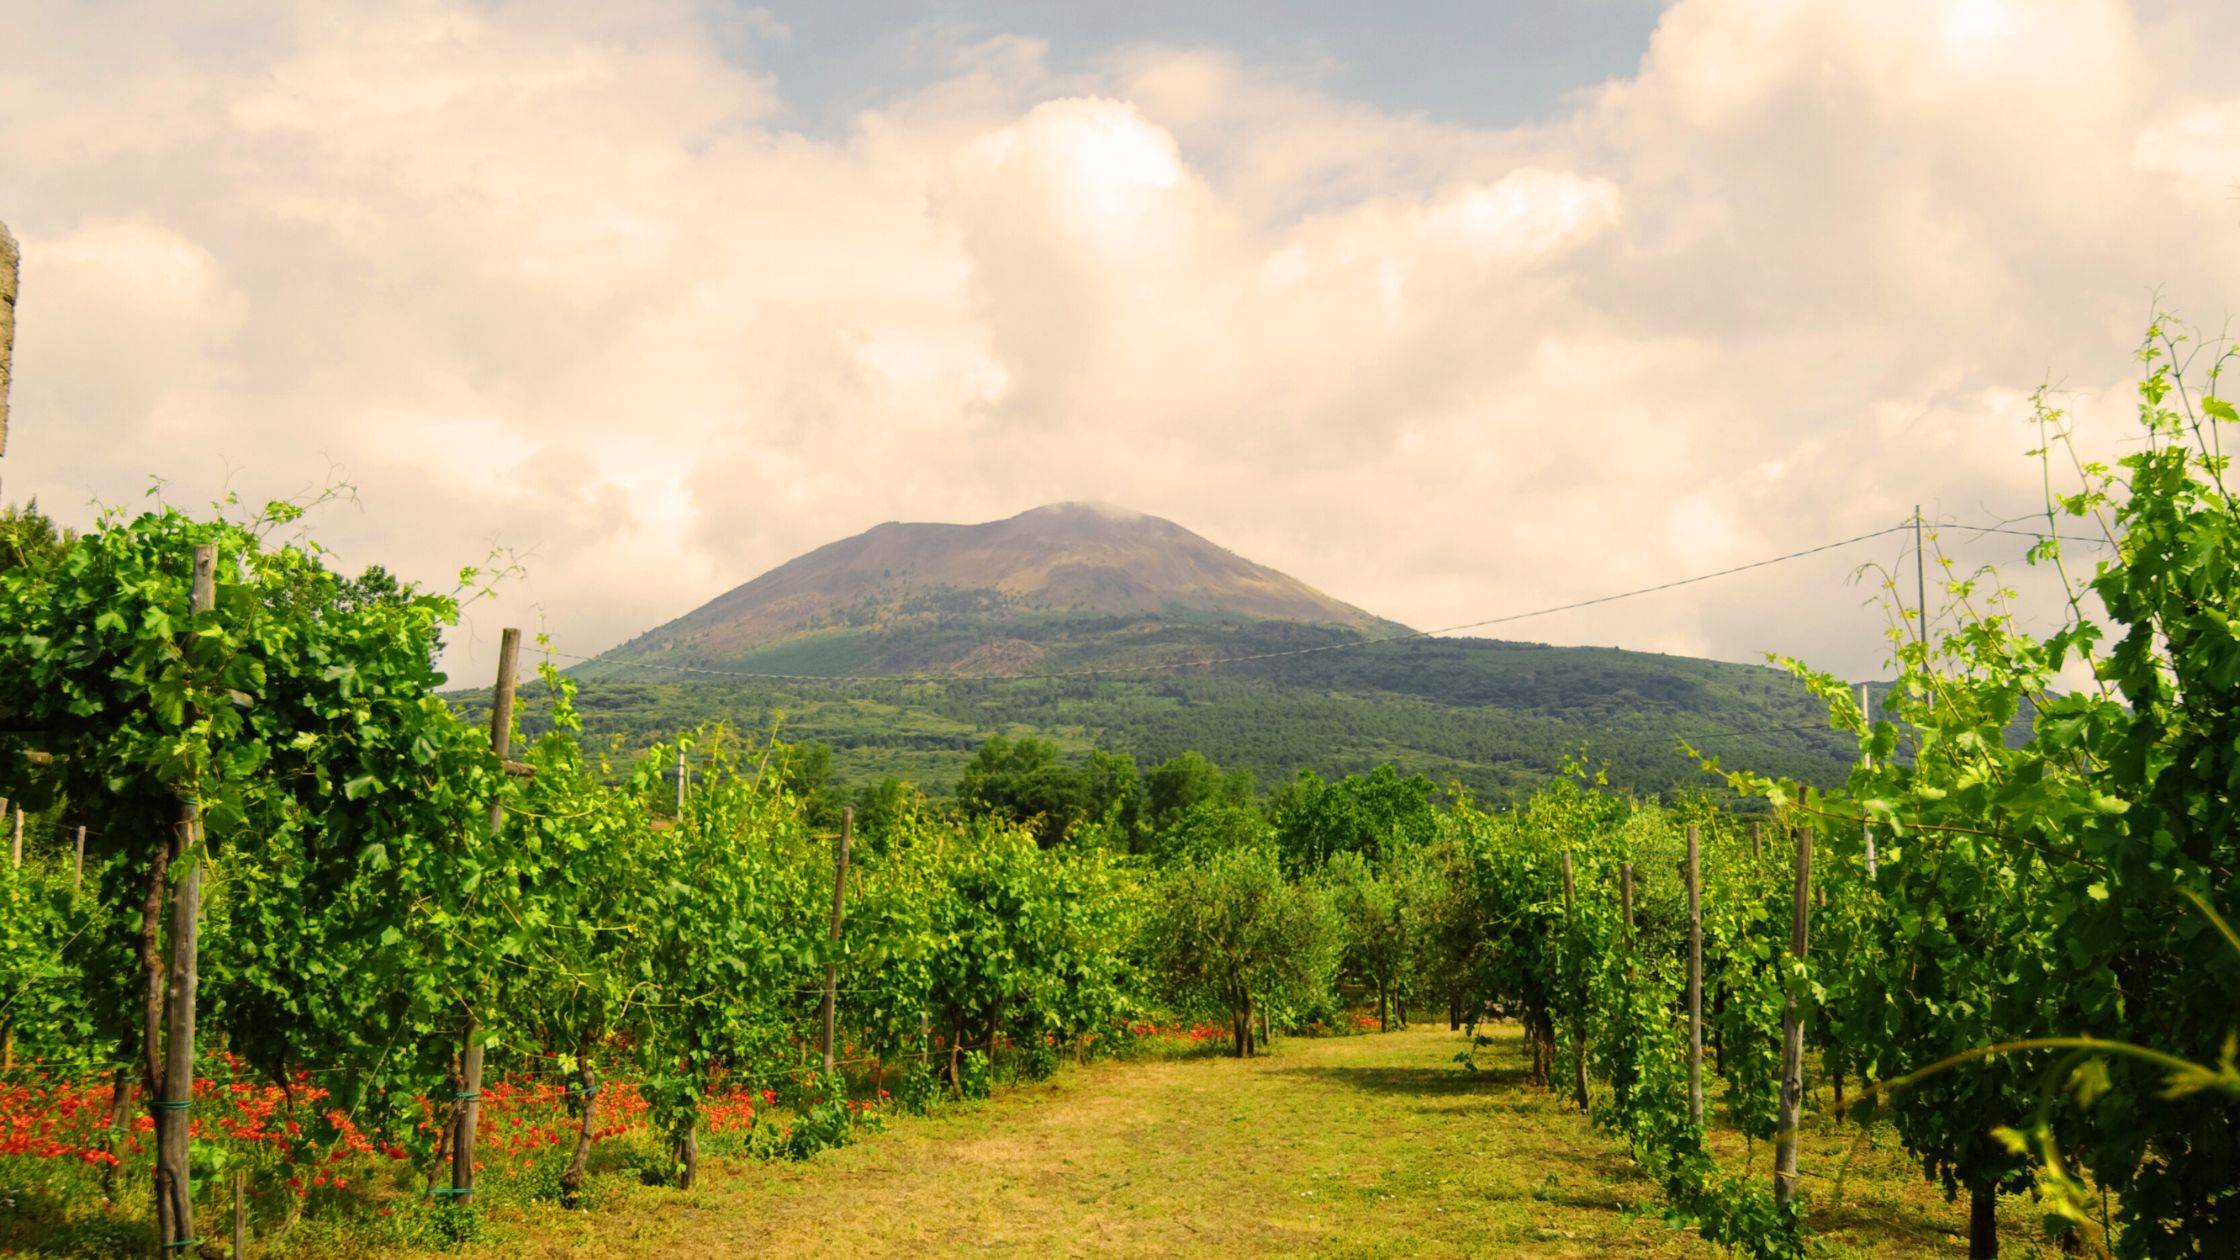 Vini vulcanici - Volcanic Wines - vesuvio